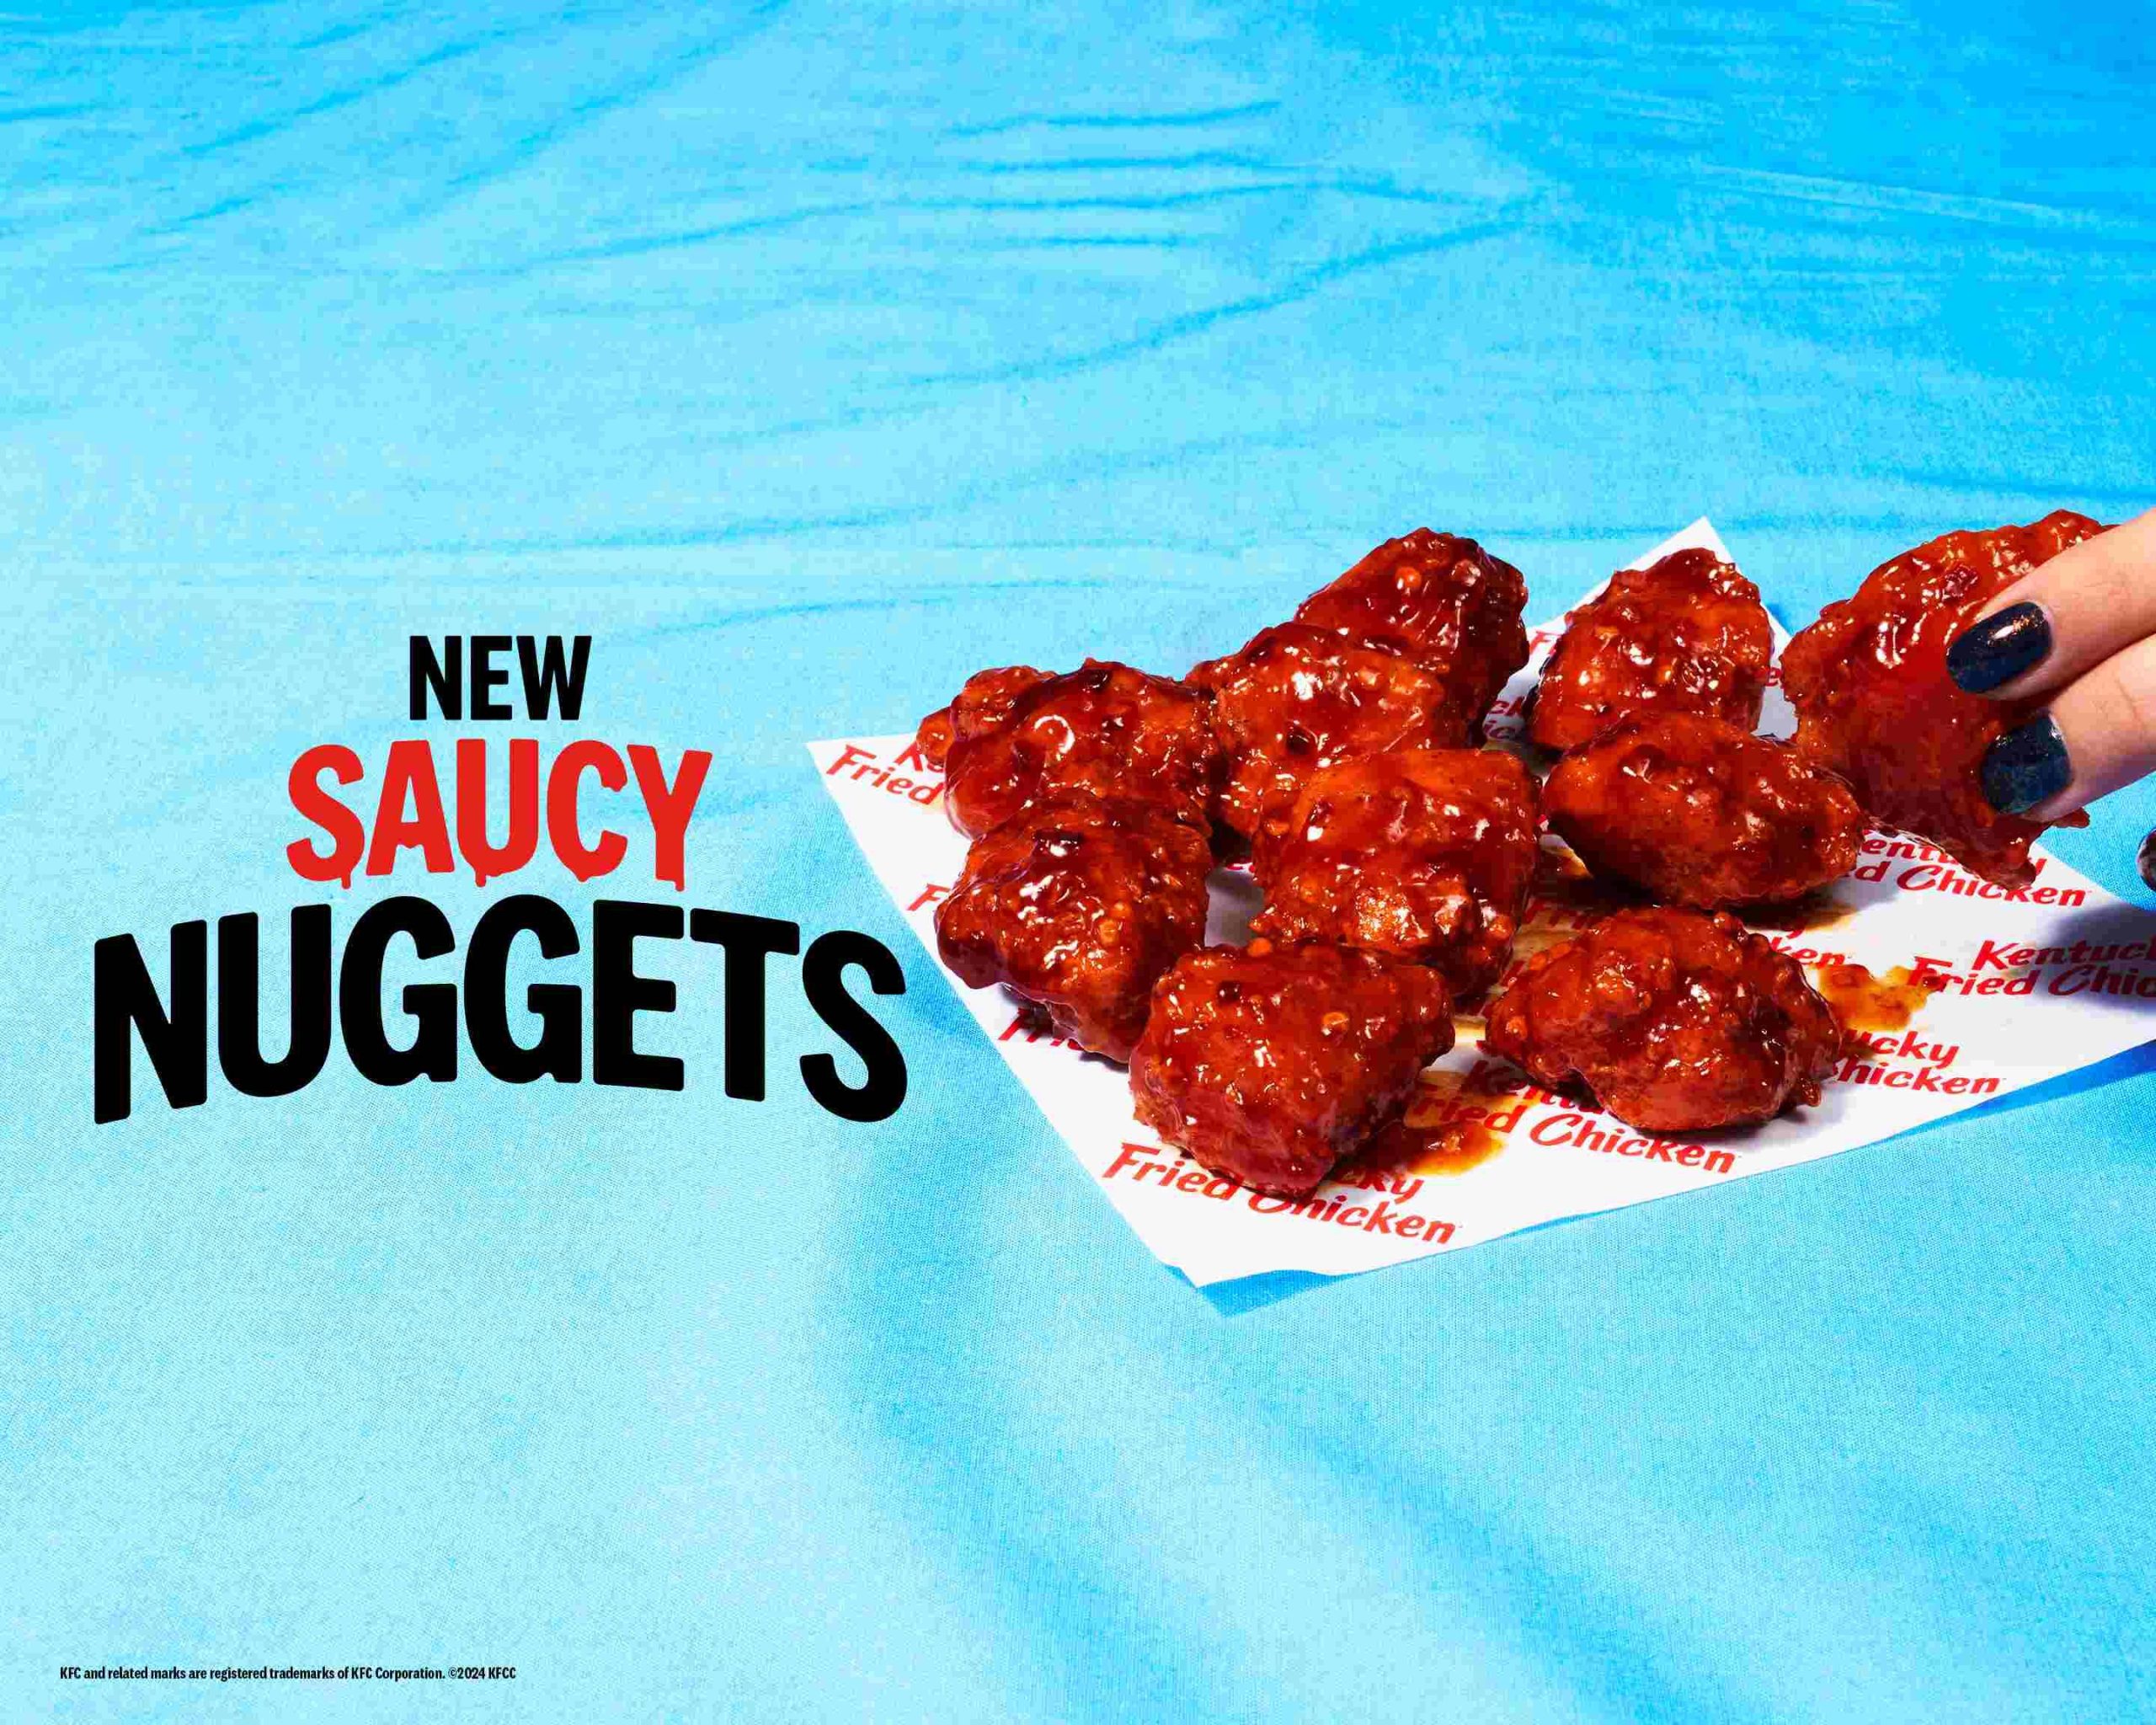 Die neuen Saucy Nuggets von KFC bringen den Geschmack auf die nächste Stufe